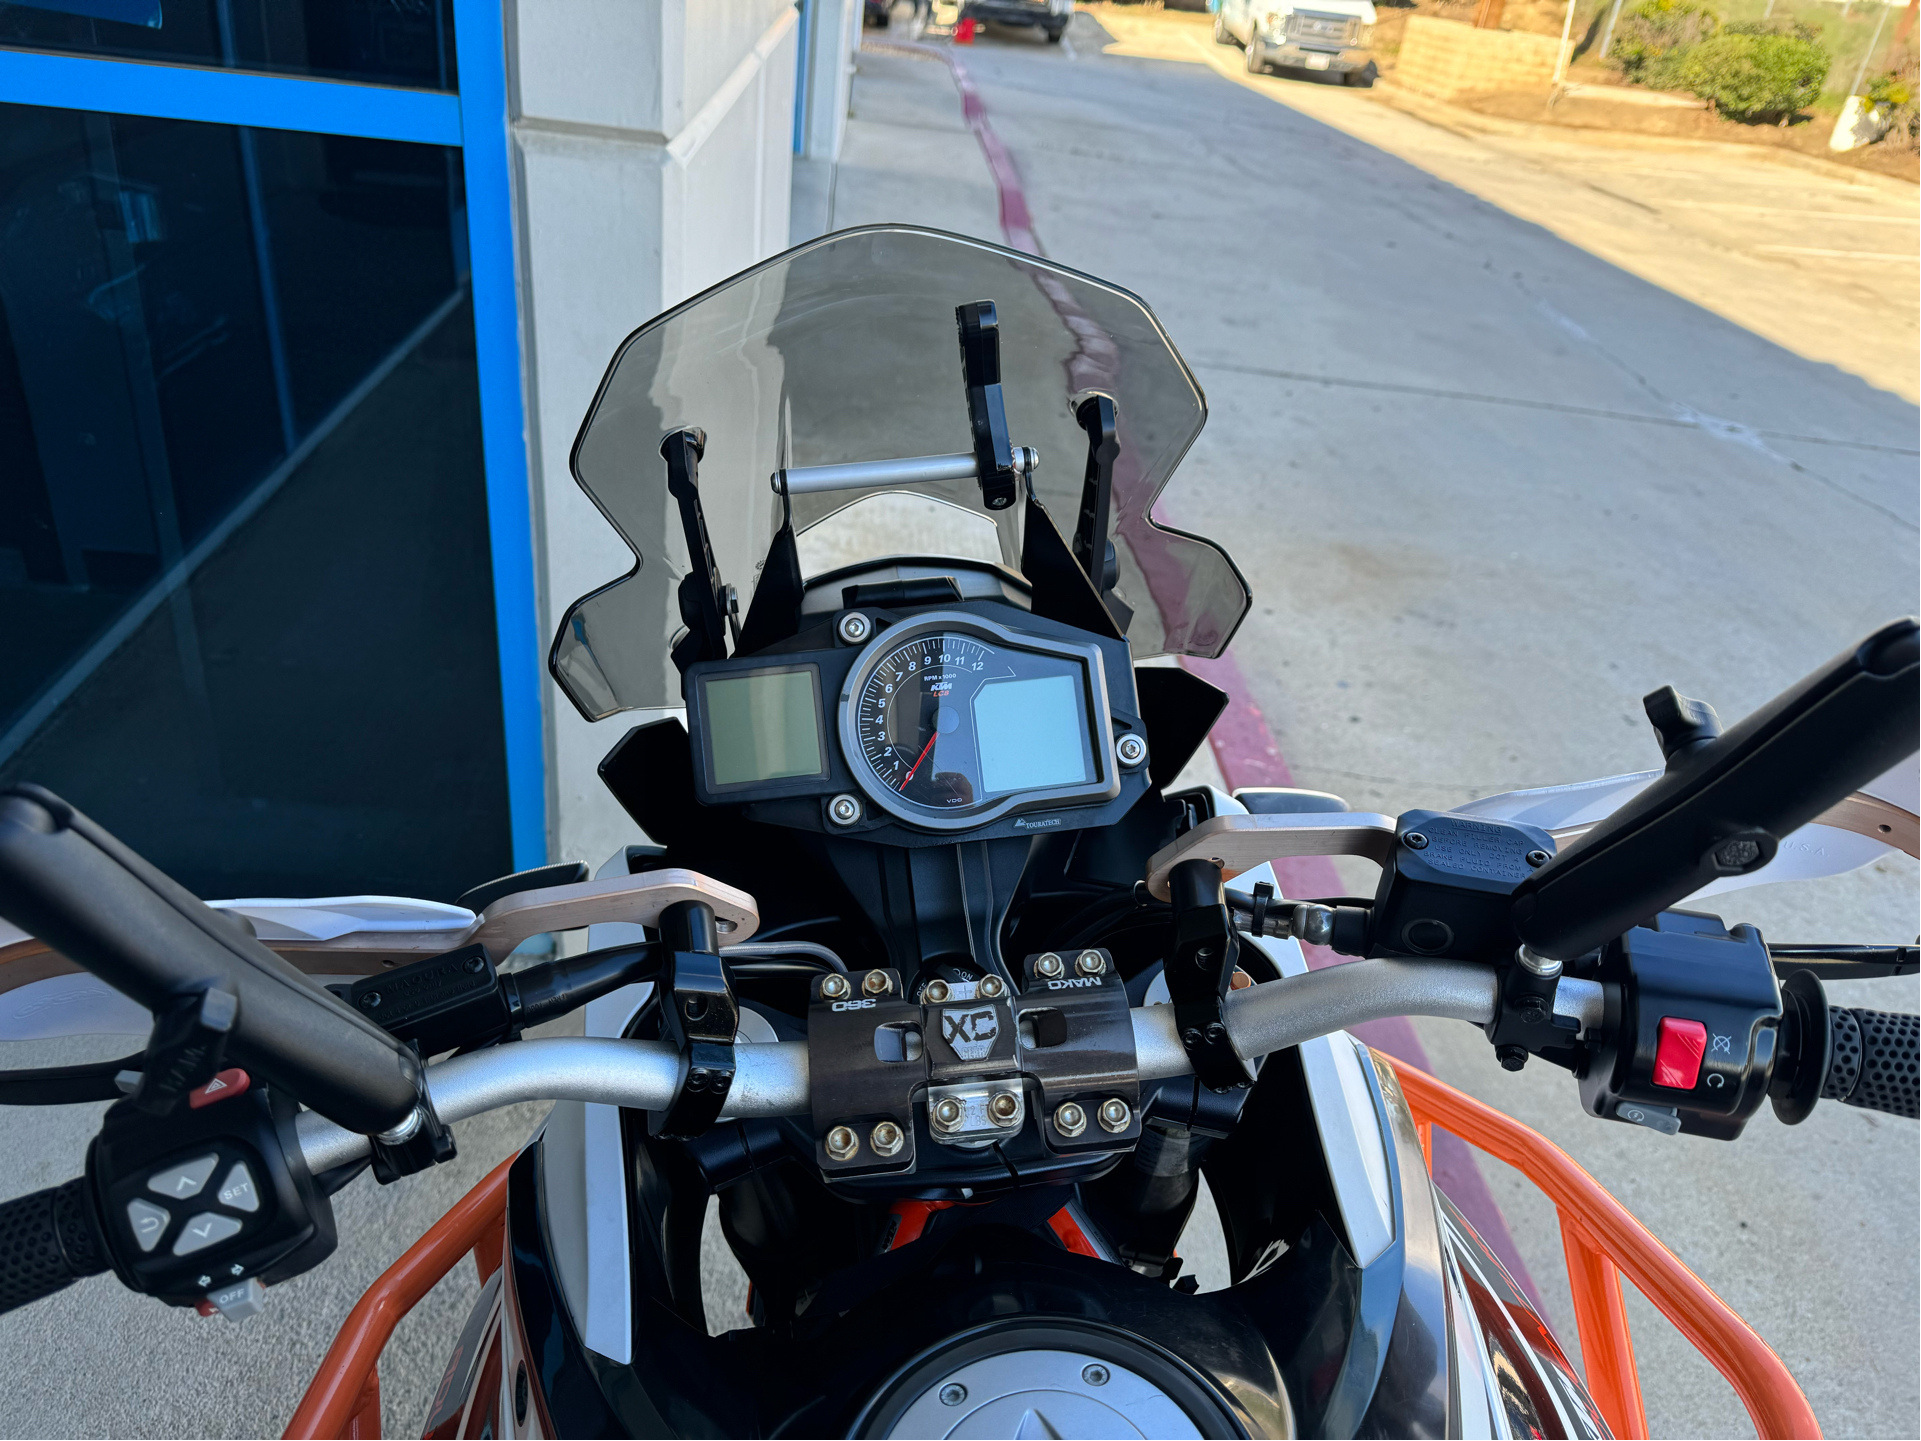 2018 KTM 1090 Adventure R in Temecula, California - Photo 2